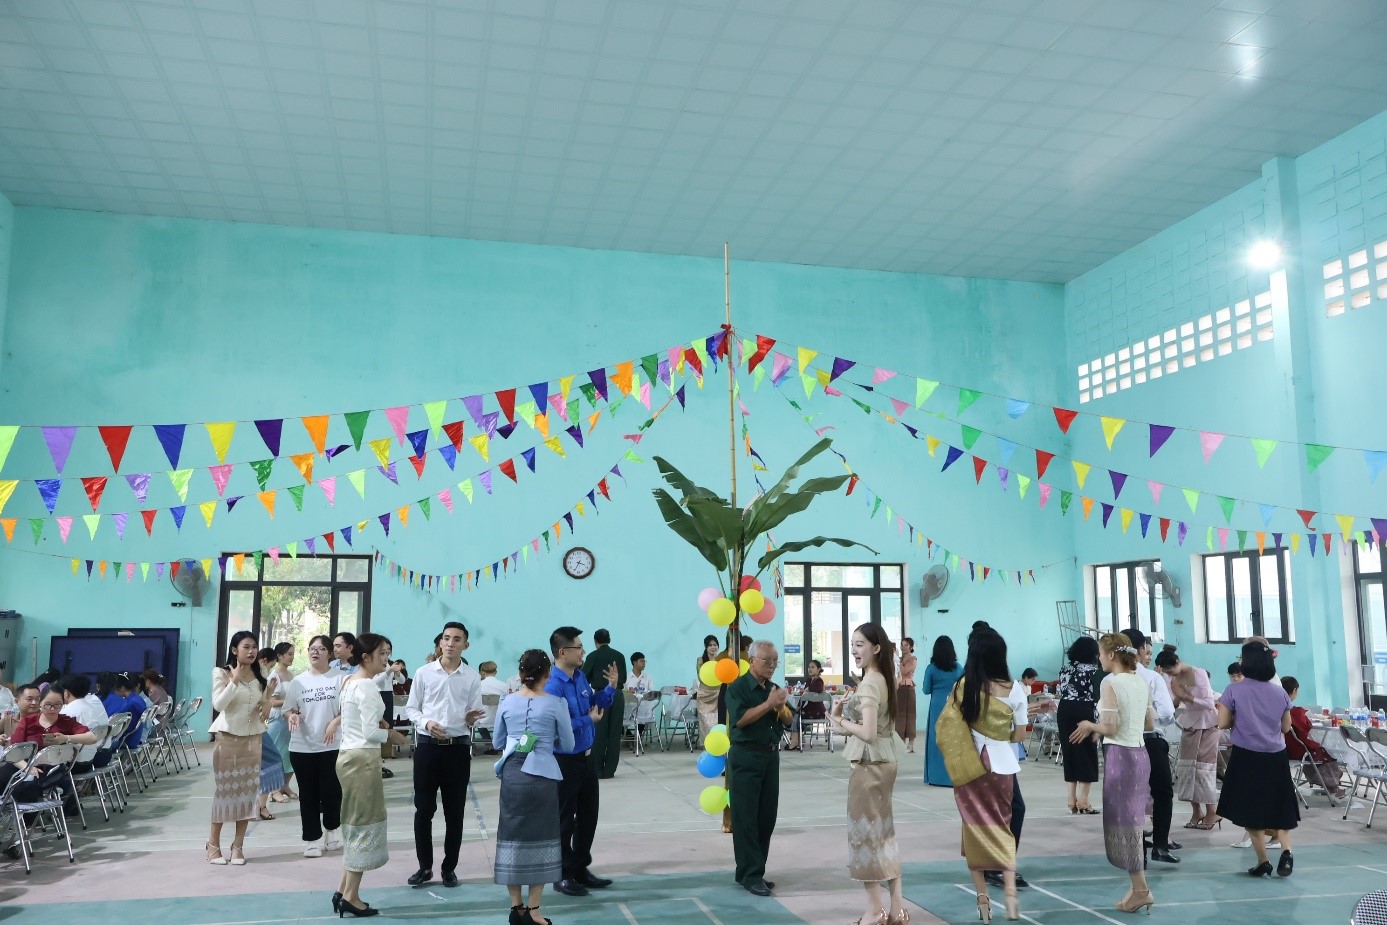 Trường Đại học Hoa Lư chúc Tết cổ truyền Bunpimay 2567 cho lưu học sinh Lào